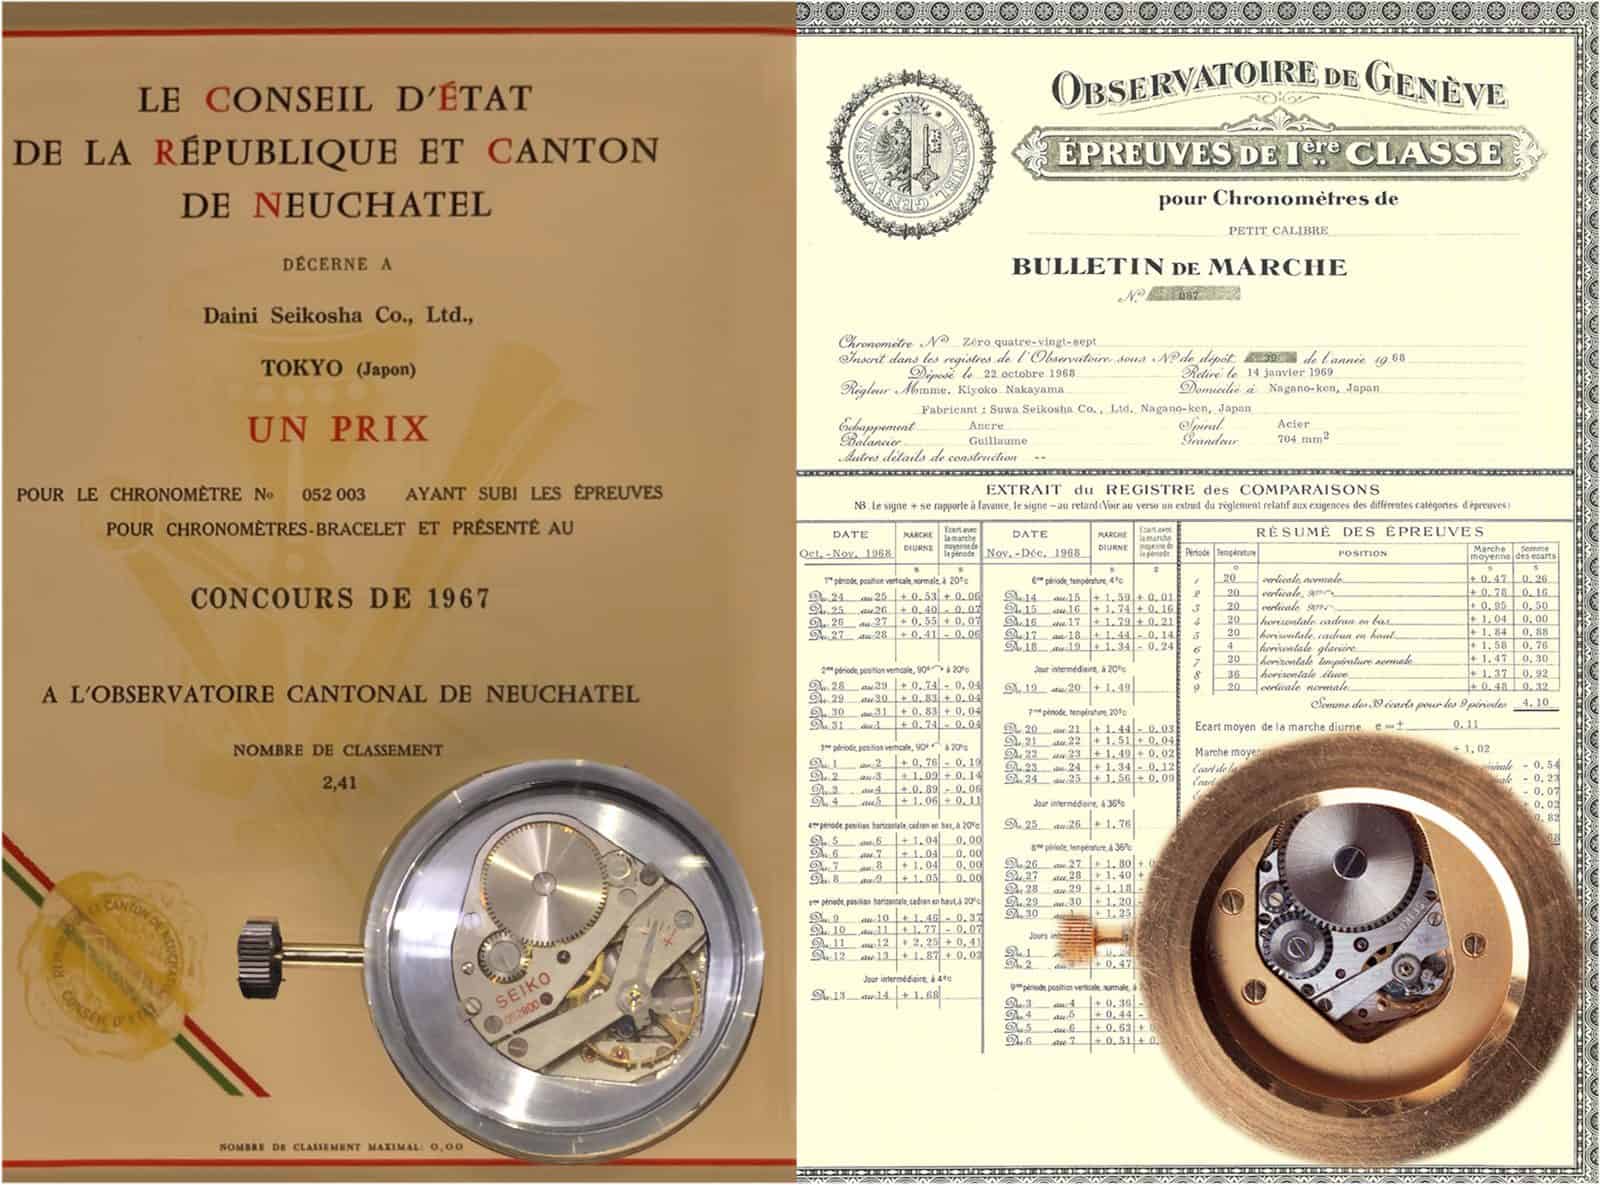 Gangscheine fuer Seiko Chronometer 1967 Neuchatel und 1968 Genf